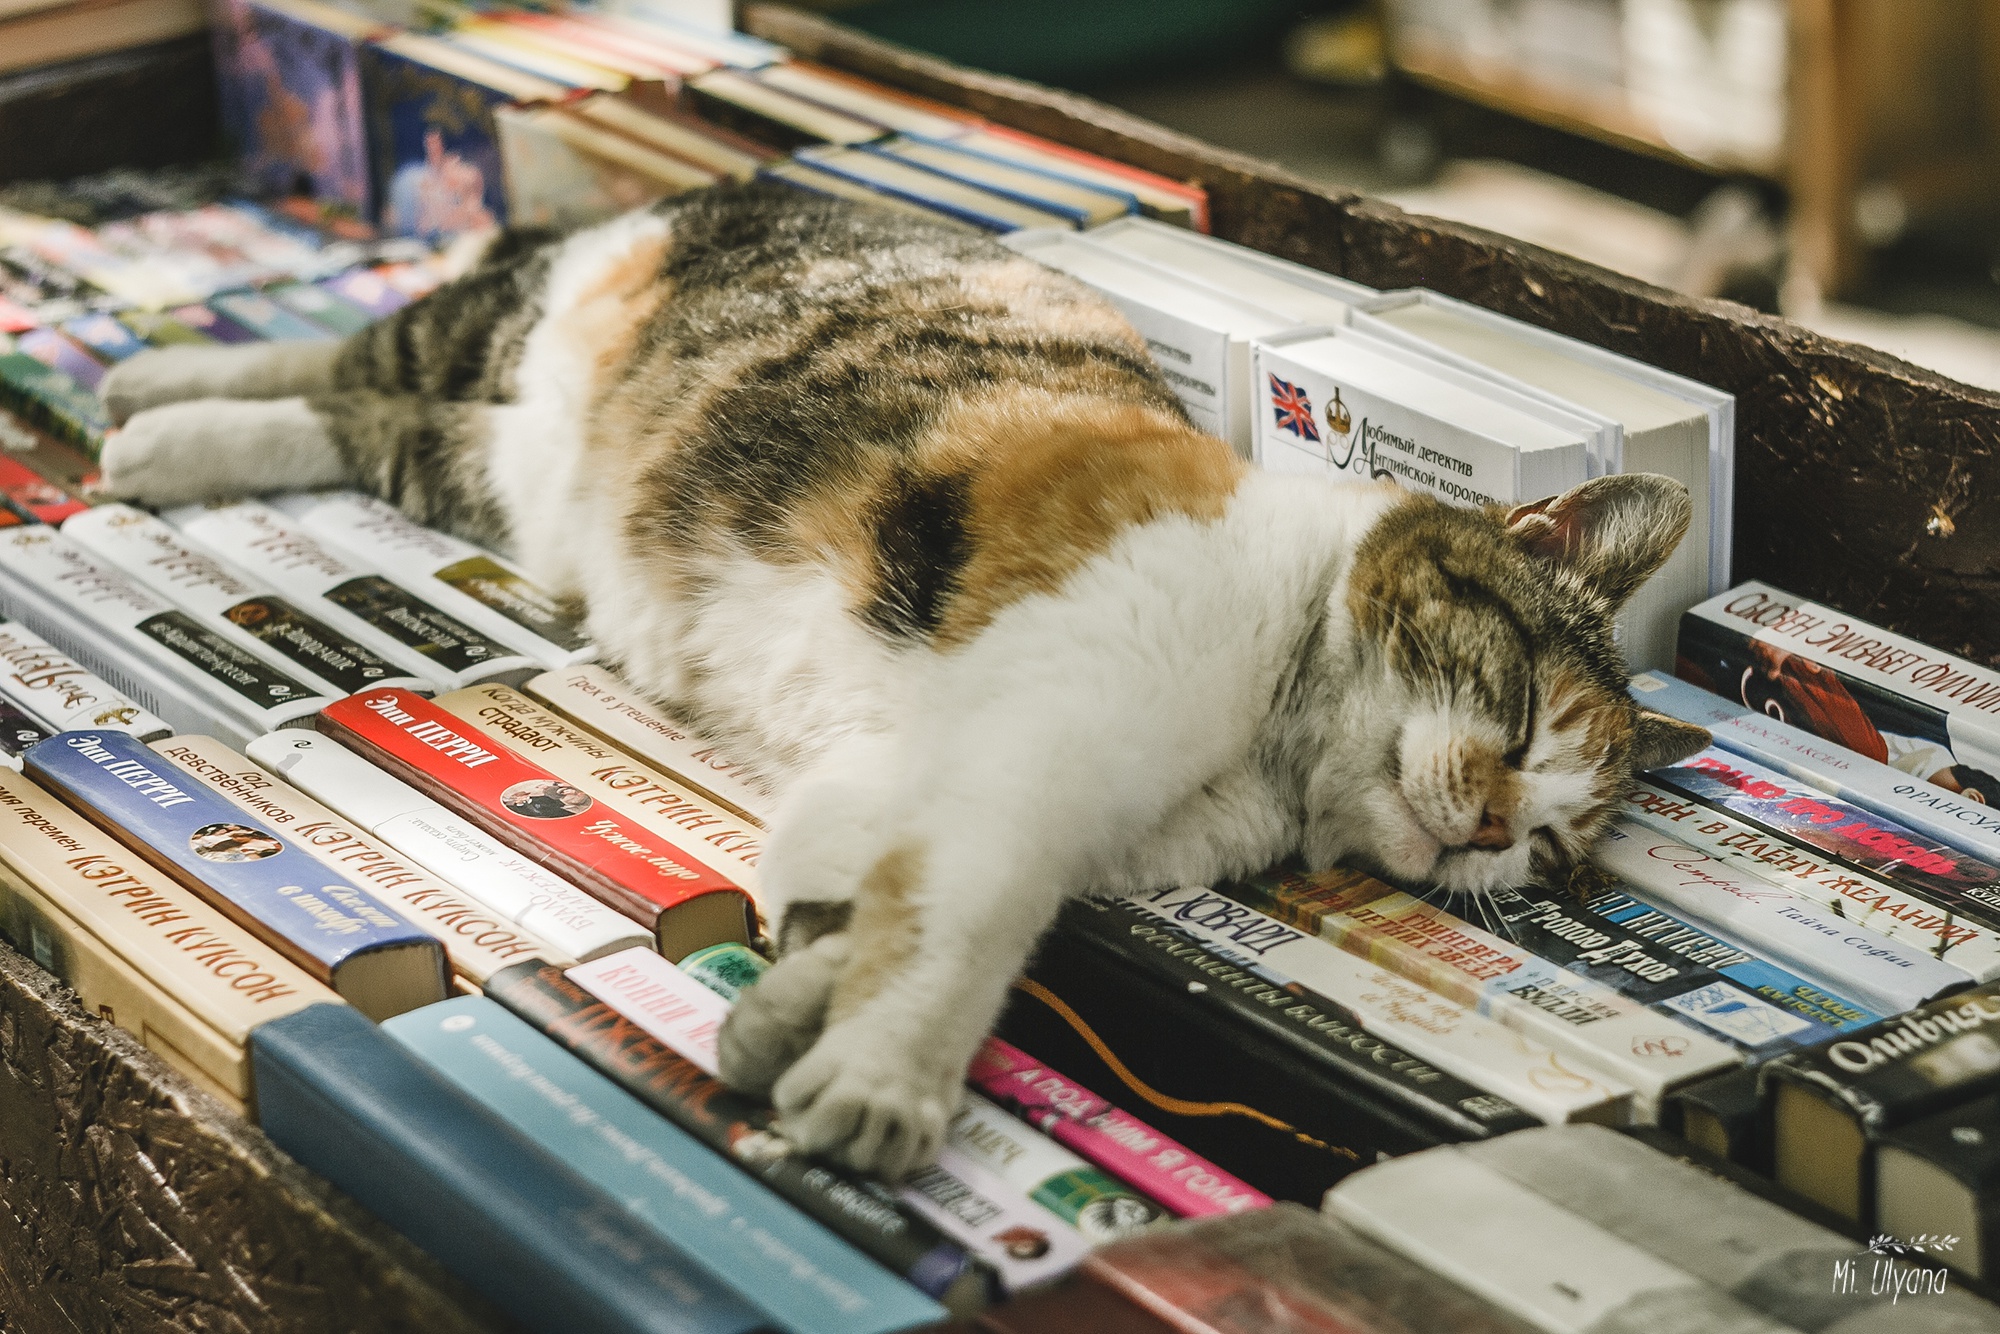 Скачать обои бесплатно Животные, Книга, Кошка, Кошки, Спать картинка на рабочий стол ПК